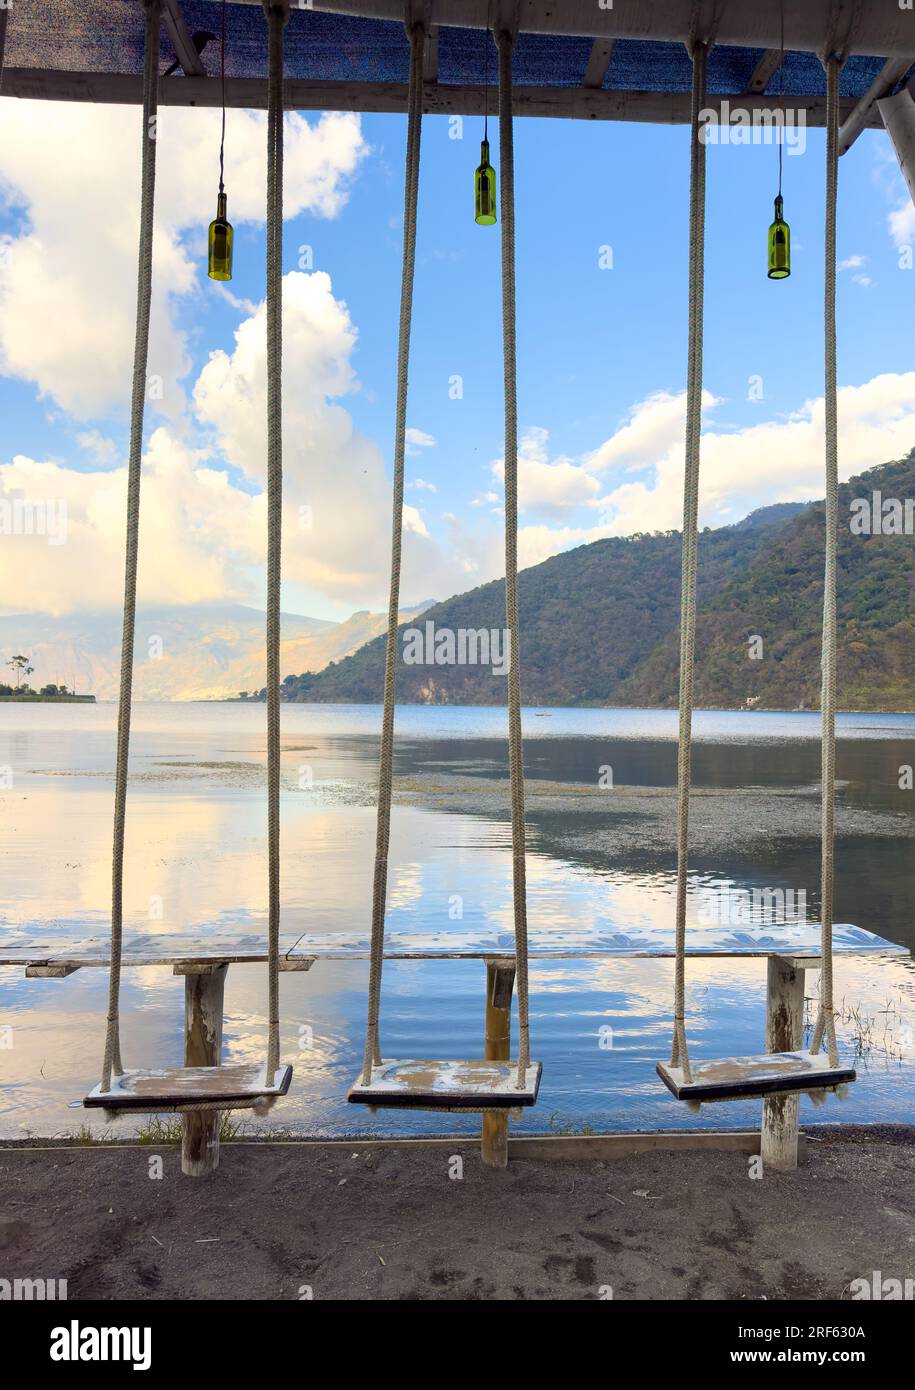 Schwingt am Ufer von San Lucas Toliman, einer Stadt am Atitlan-See in Guatemala Stockfoto